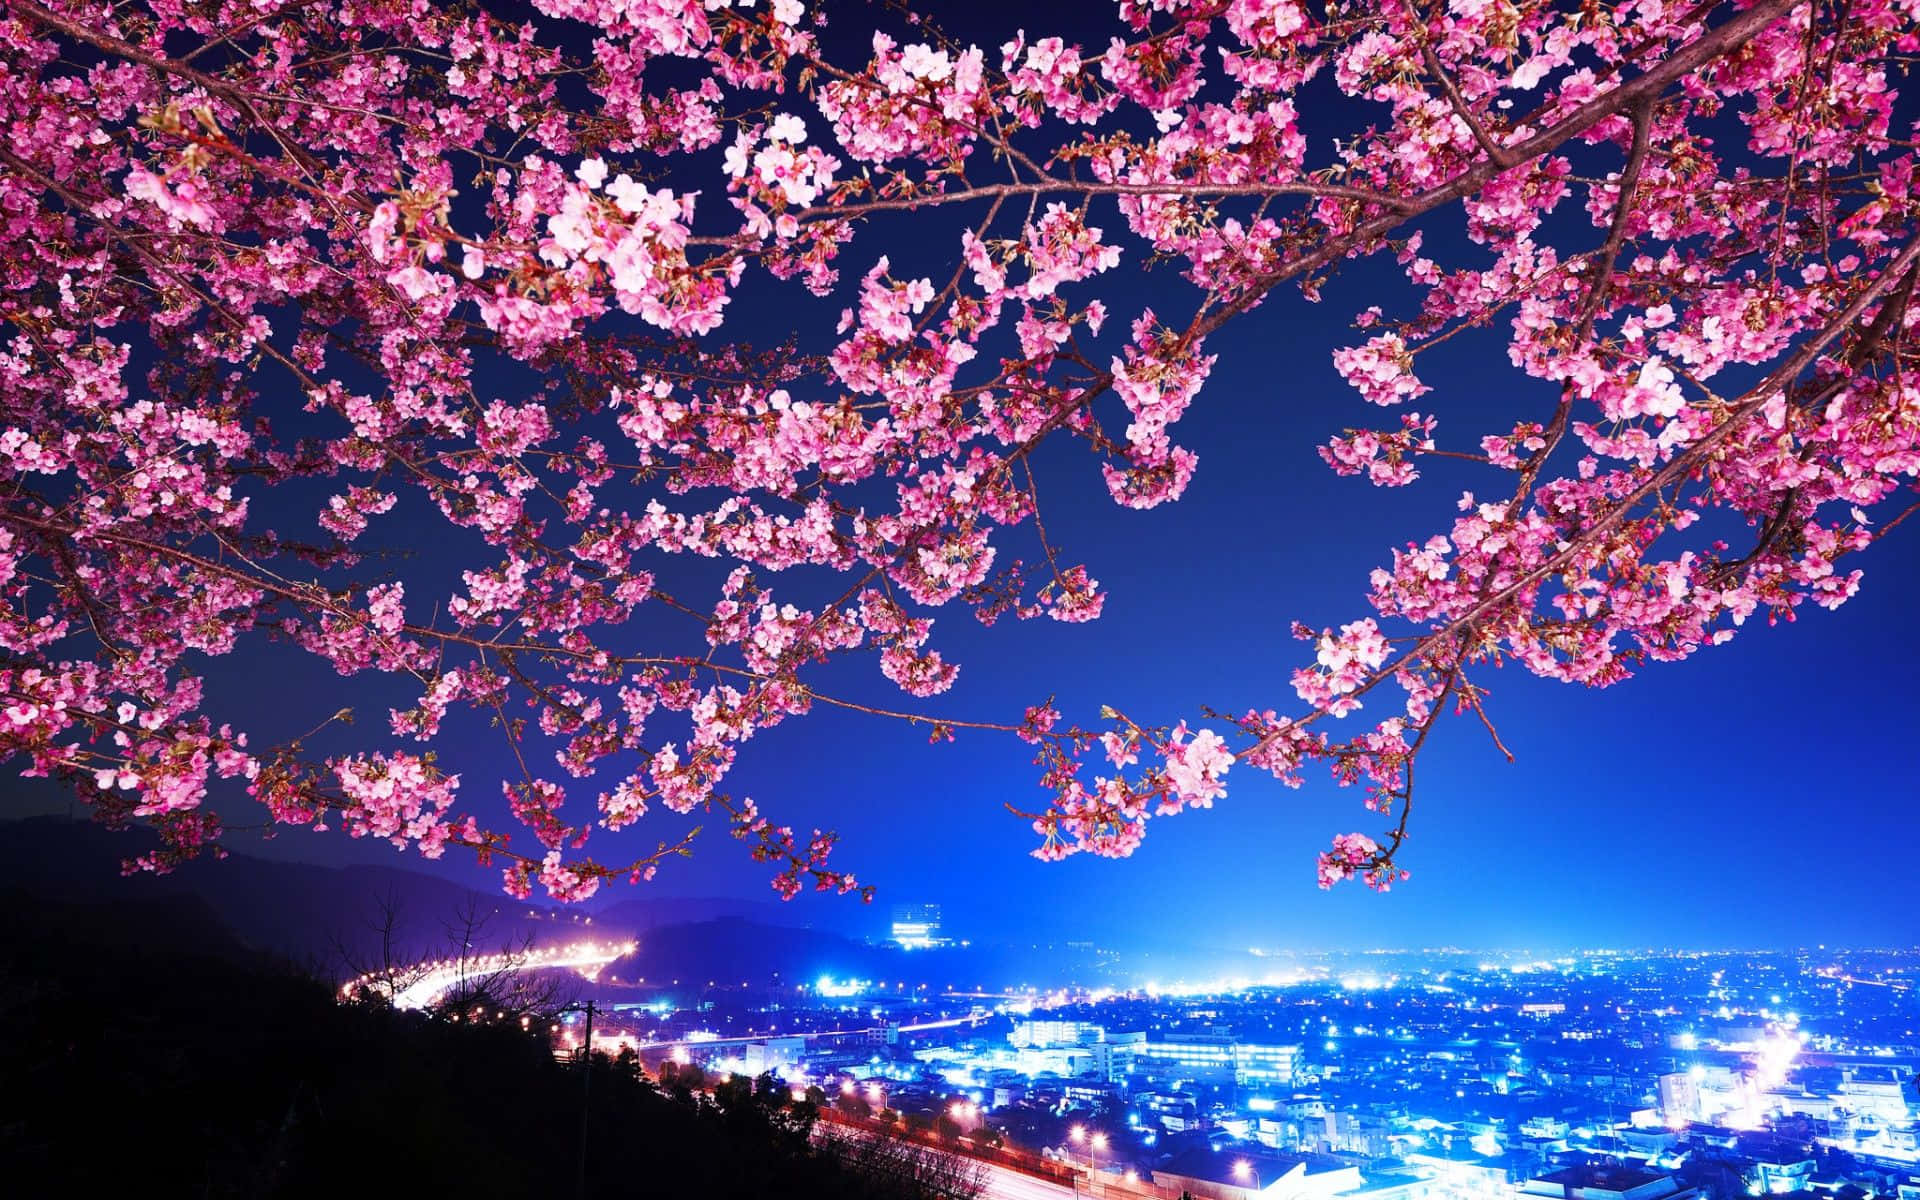 Dark Cherry Blossom At Night Wallpaper